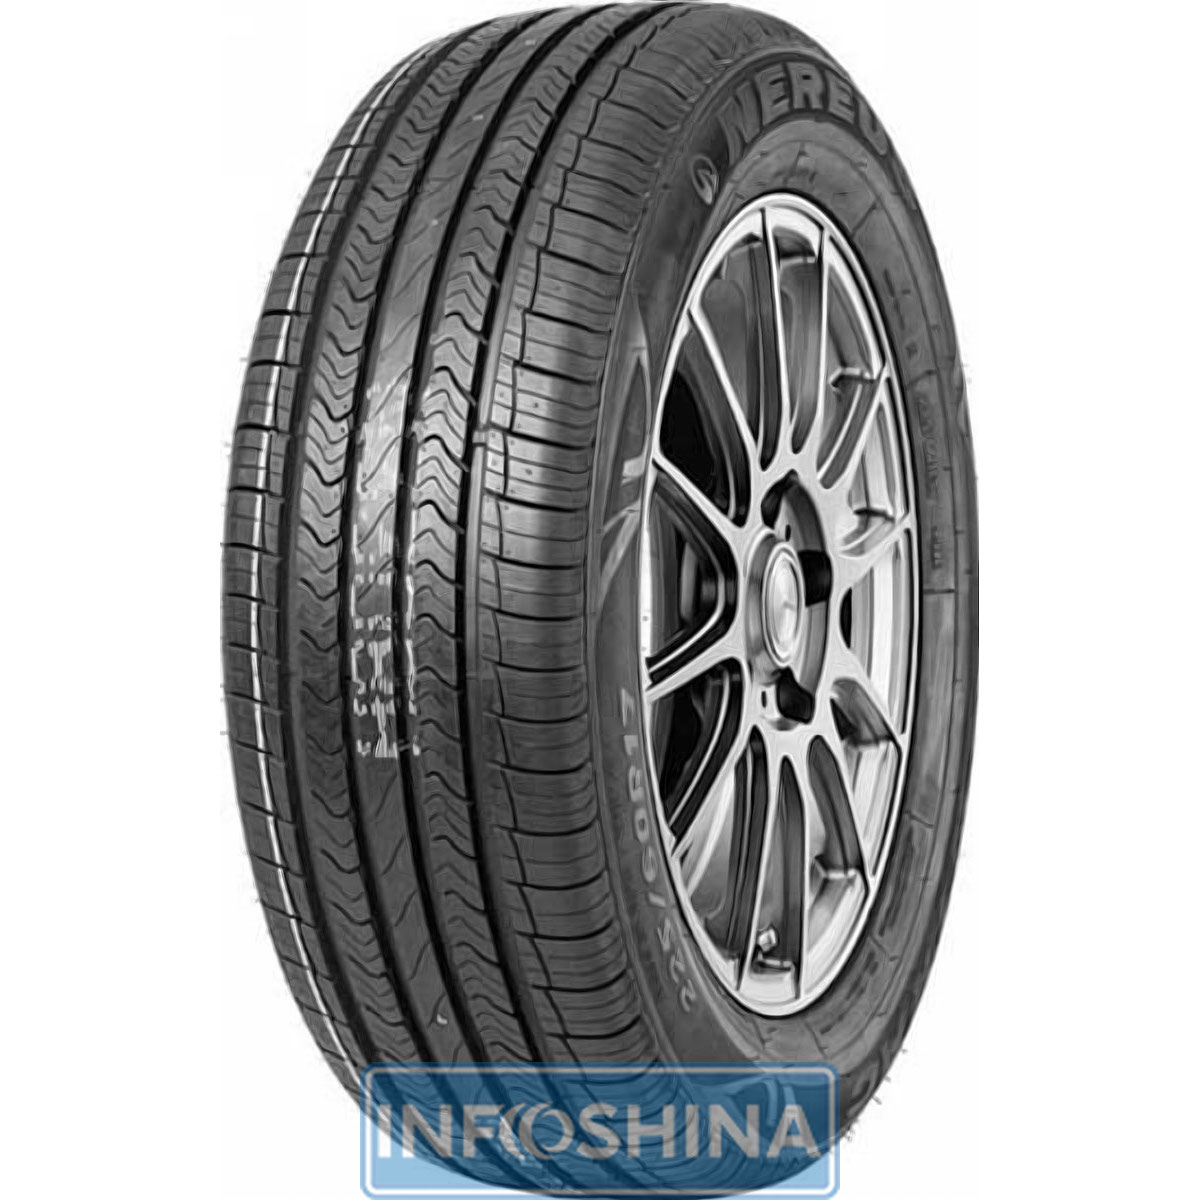 Купить шины Nereus Dyntrac 285/60 R18 120H XL